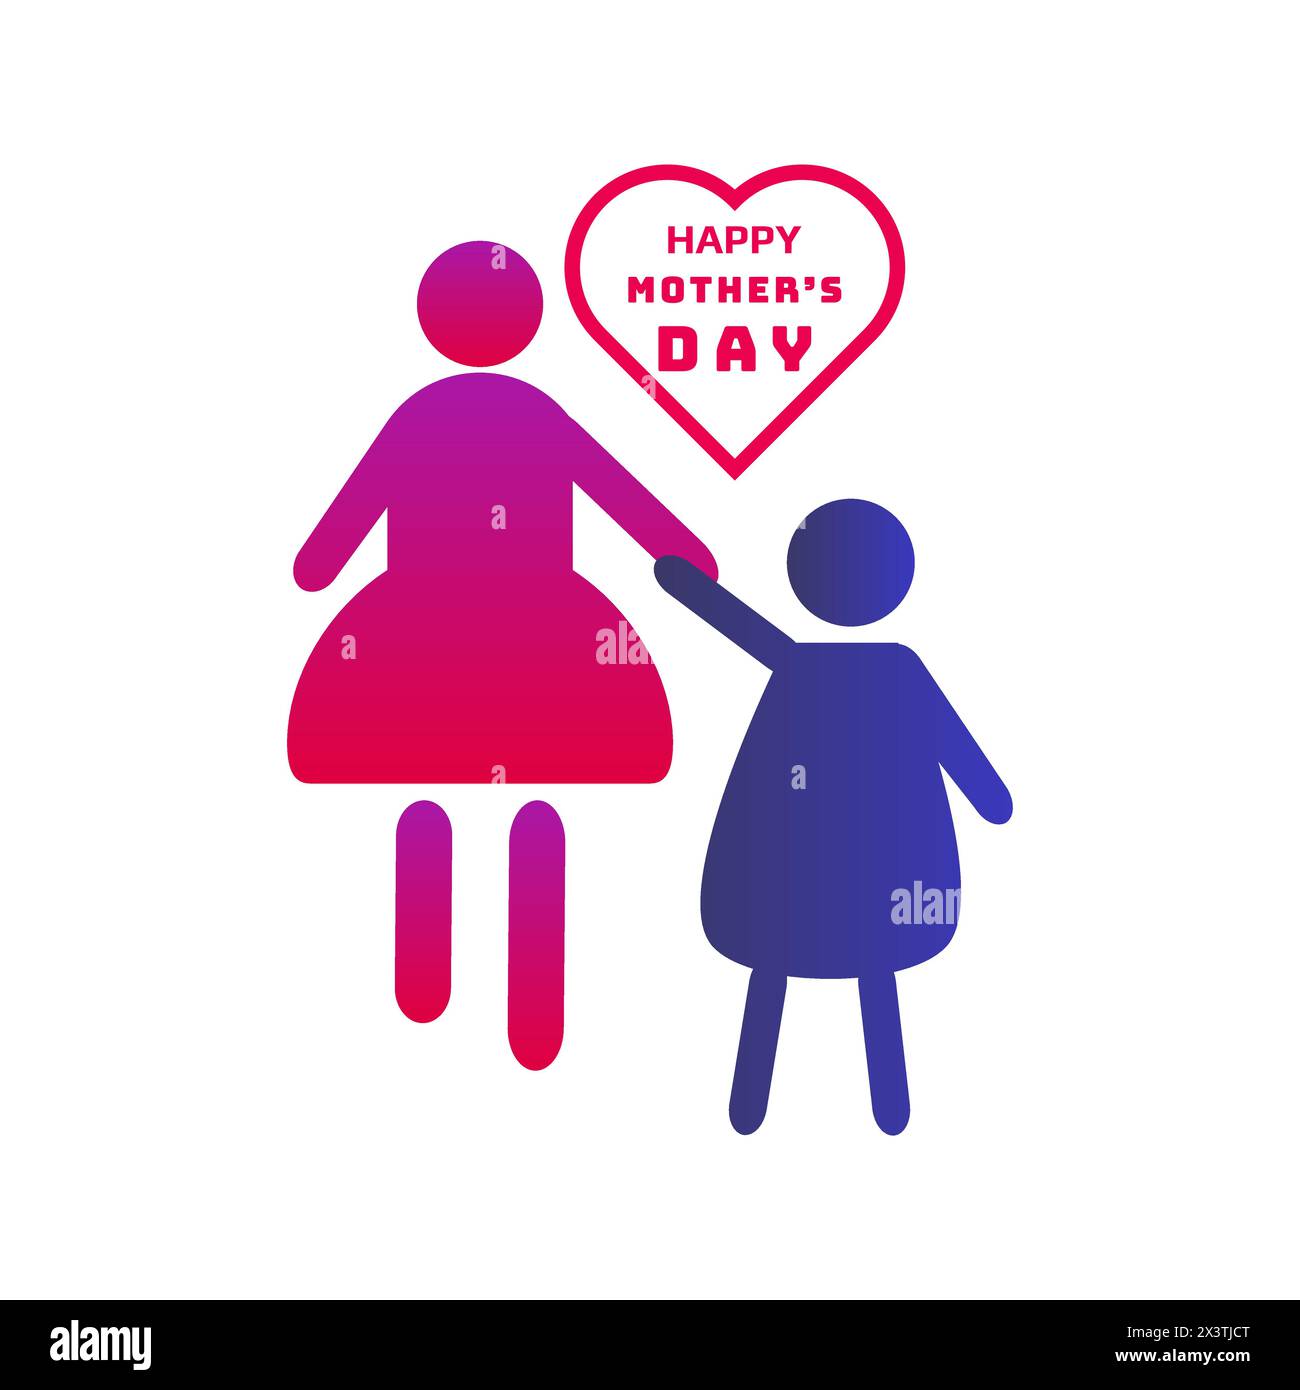 Glücklicher Muttertag Vektor Illustration Design Vorlage Banner oder Poster Design für Feier internationalen Mama Feiertag mit Herzzeichen Symbol Stock Vektor